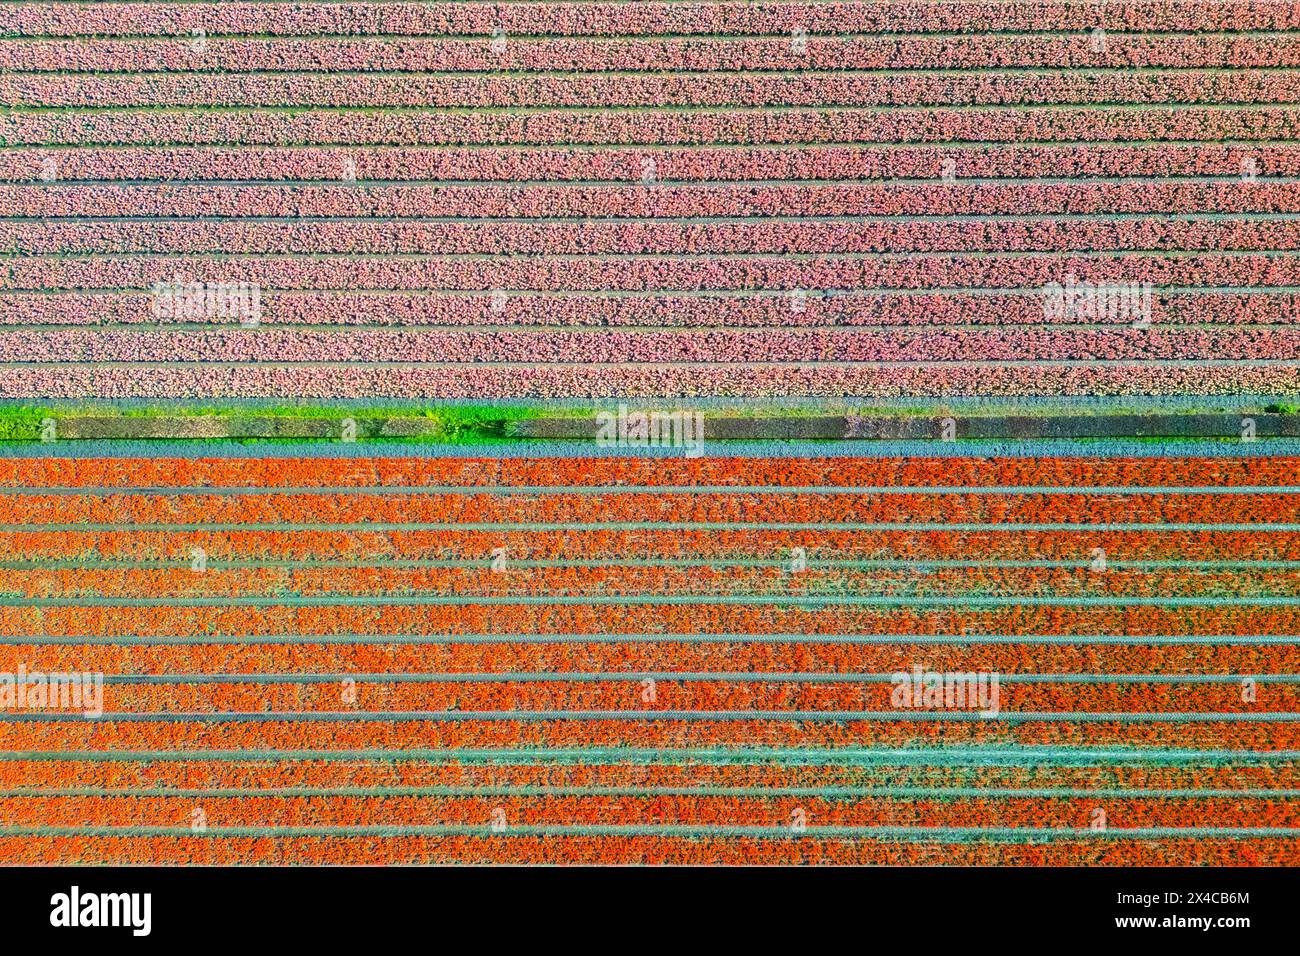 Aerial view of tulips stripes of various colors in spring. De Zilk, Noordwijk, Zuid-Holland district, Nederland. Stock Photo